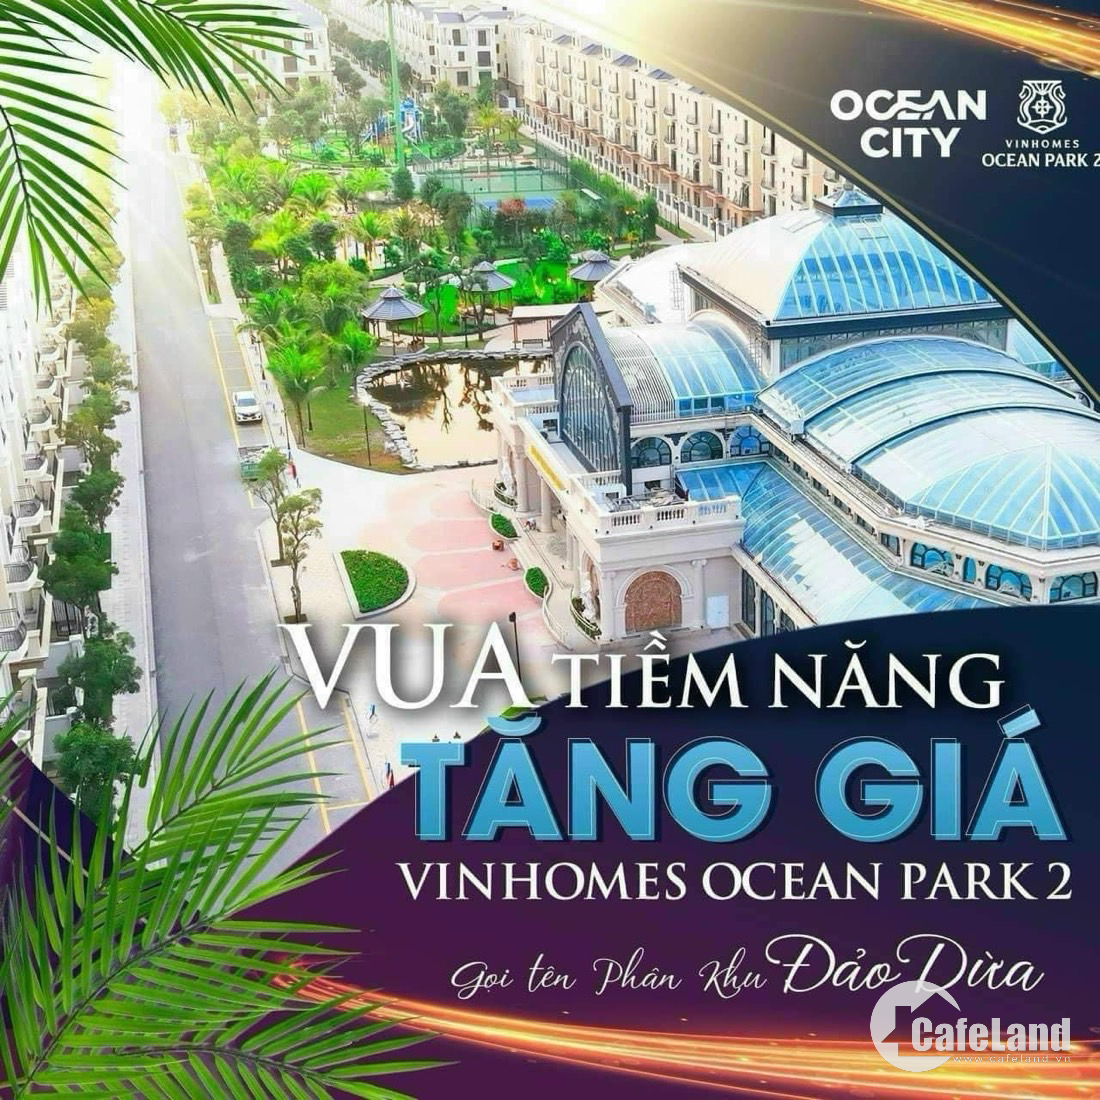 Bán Siêu Phẩm Song Lập Đảo Dừa 180M2 Khu Khép Kín Vvip Vinhomes Ocean Park 2